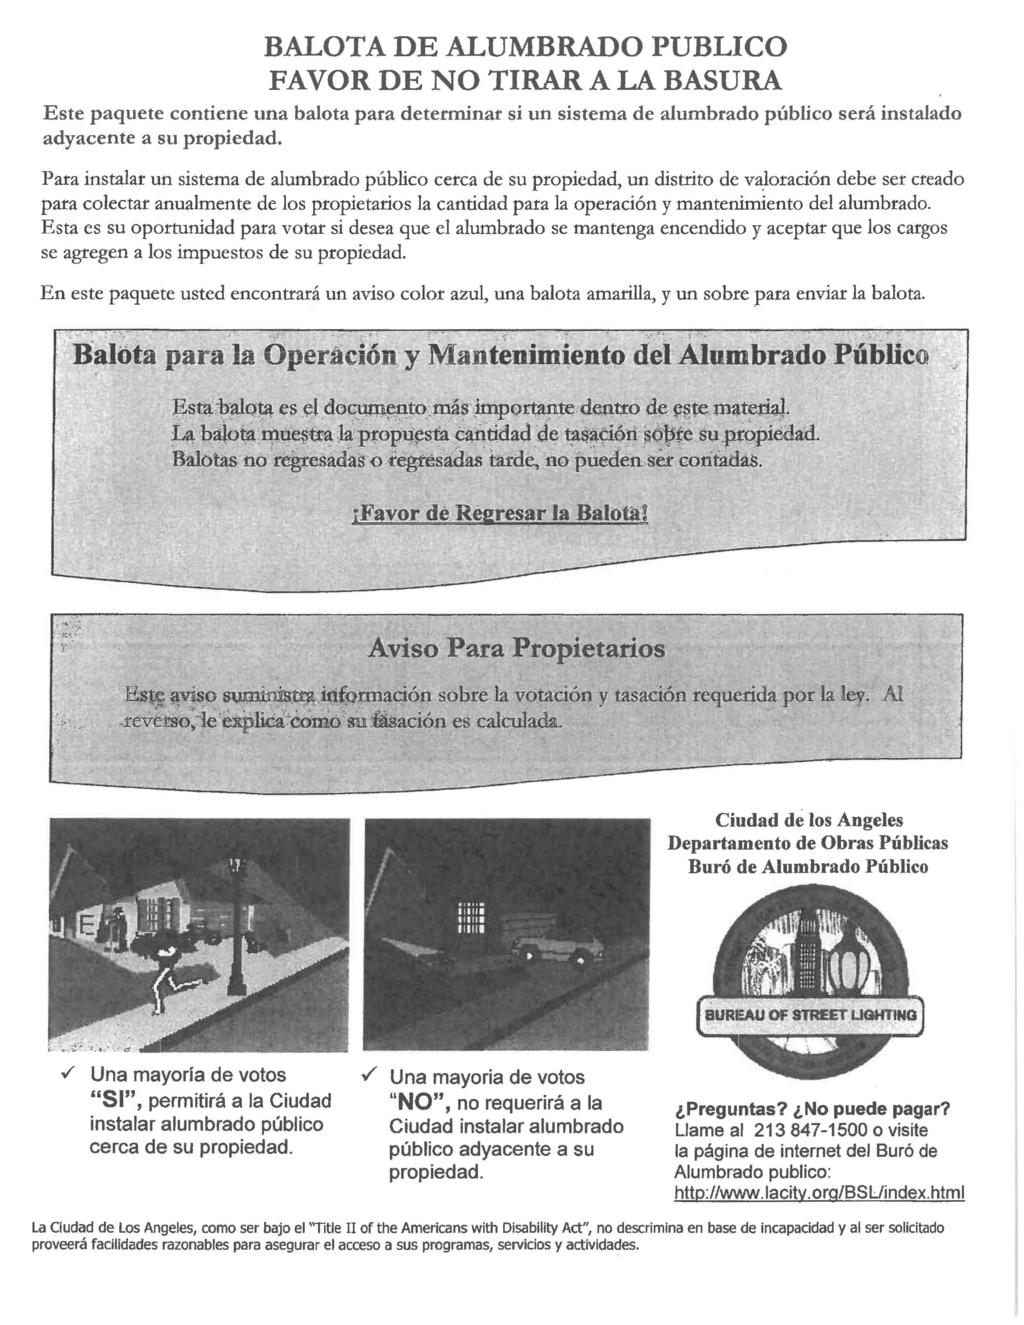 BALOTA DE ALUMBRADO PUBLICO FAVOR DE NO TIRAR A LA BASURA Este paquete contiene una balota para determinat si un sistema de alumbrado publico sera instalado adyacente a su propiedad.